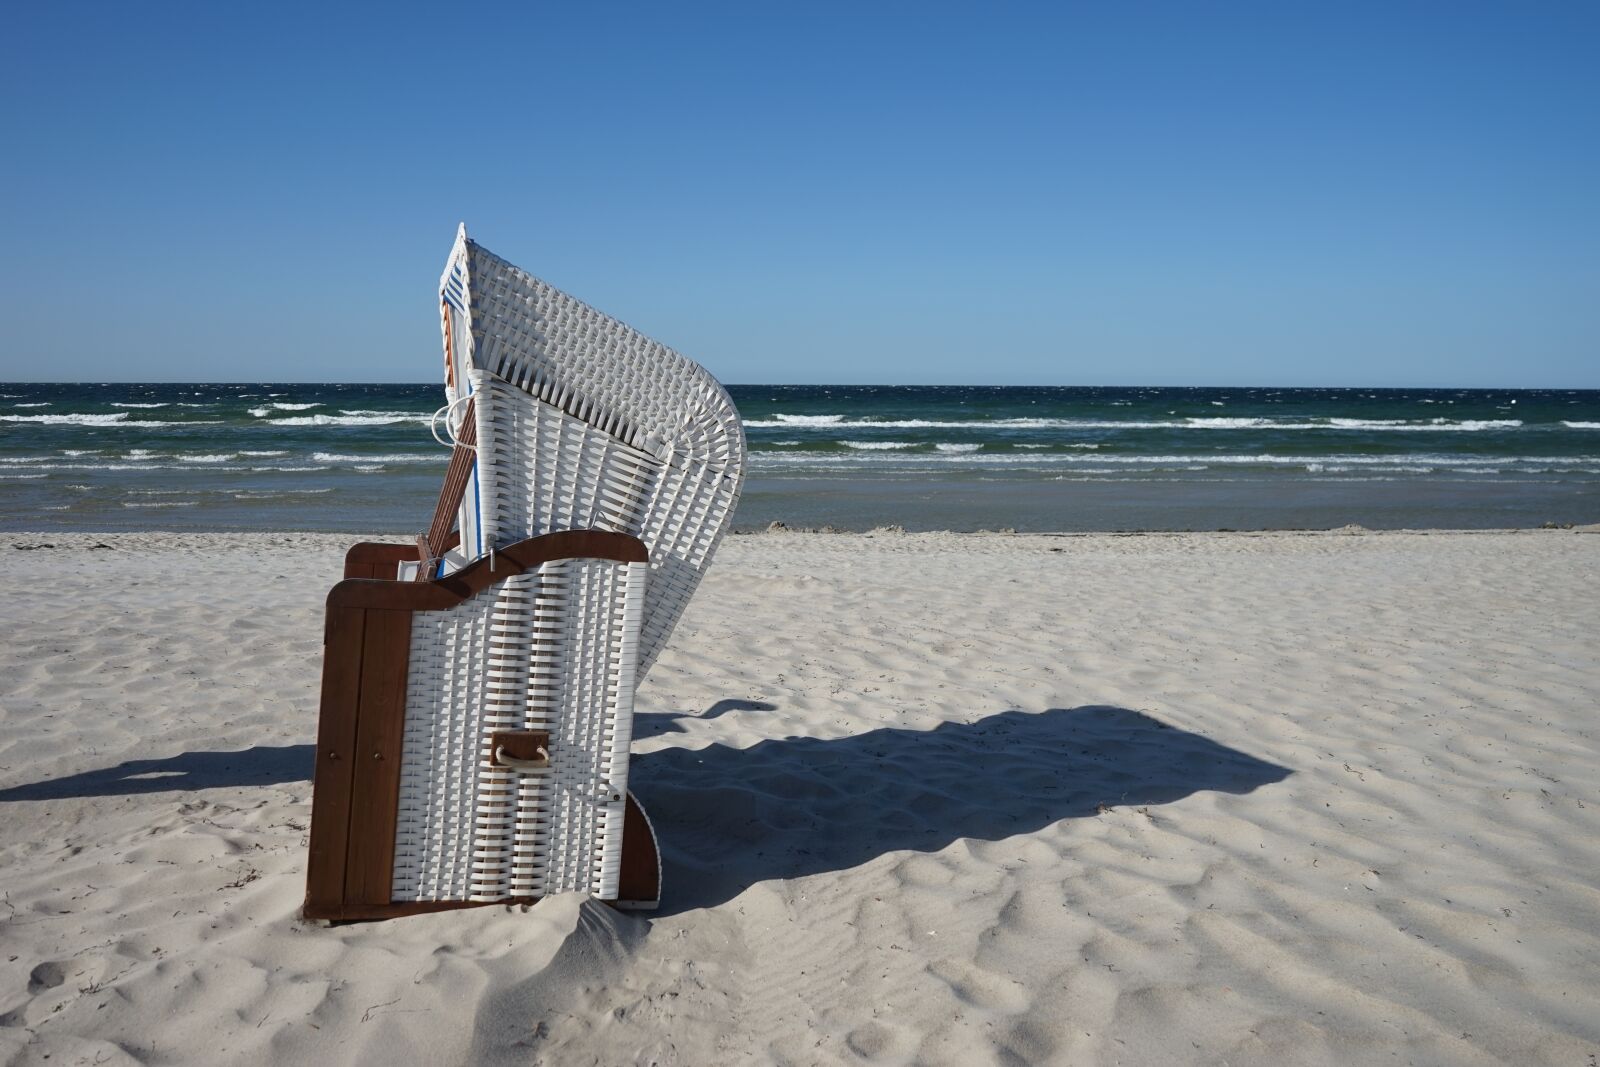 Sony a7 sample photo. Beach chair, beach, sea photography